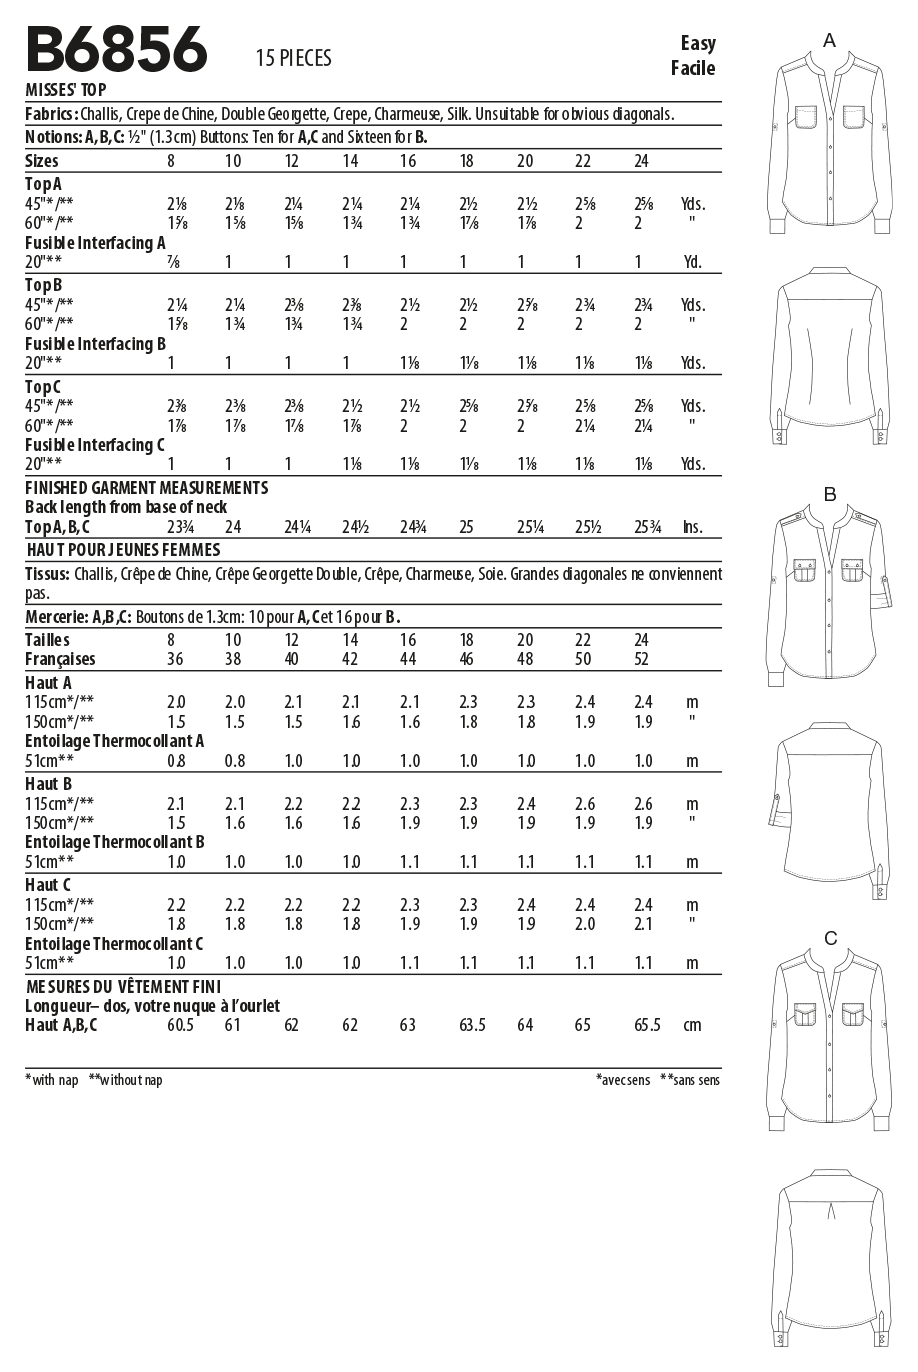 Butterick Sewing Pattern B6856 Misses' Shirt Palmer/Pletsch